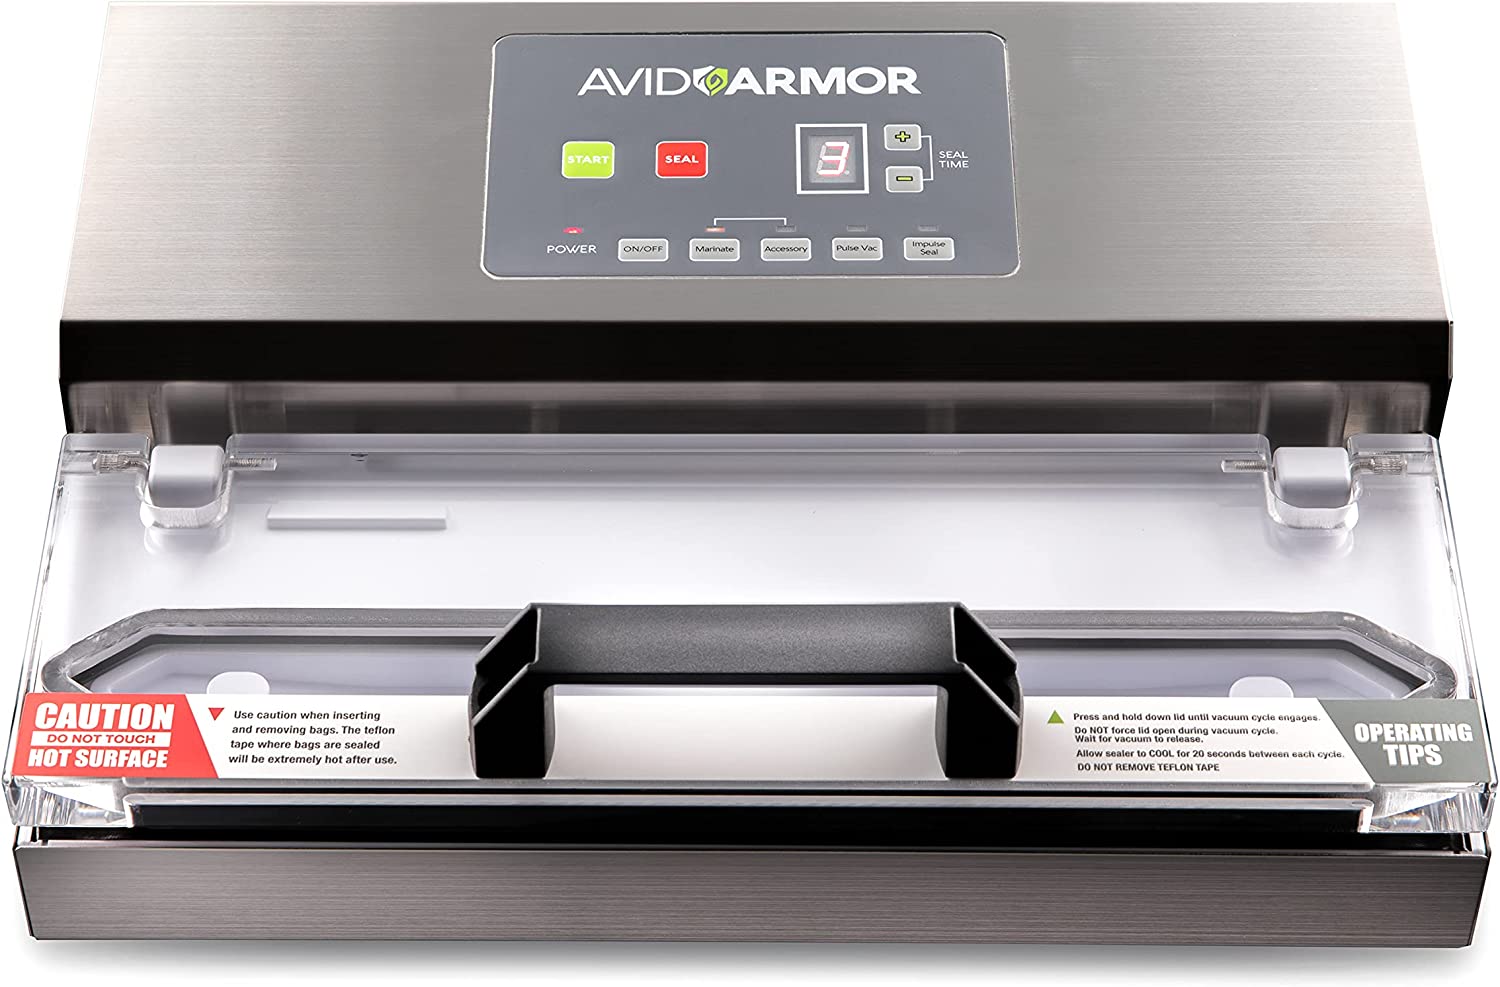 Avid Armor Vacuum Sealer Machine A100 Review